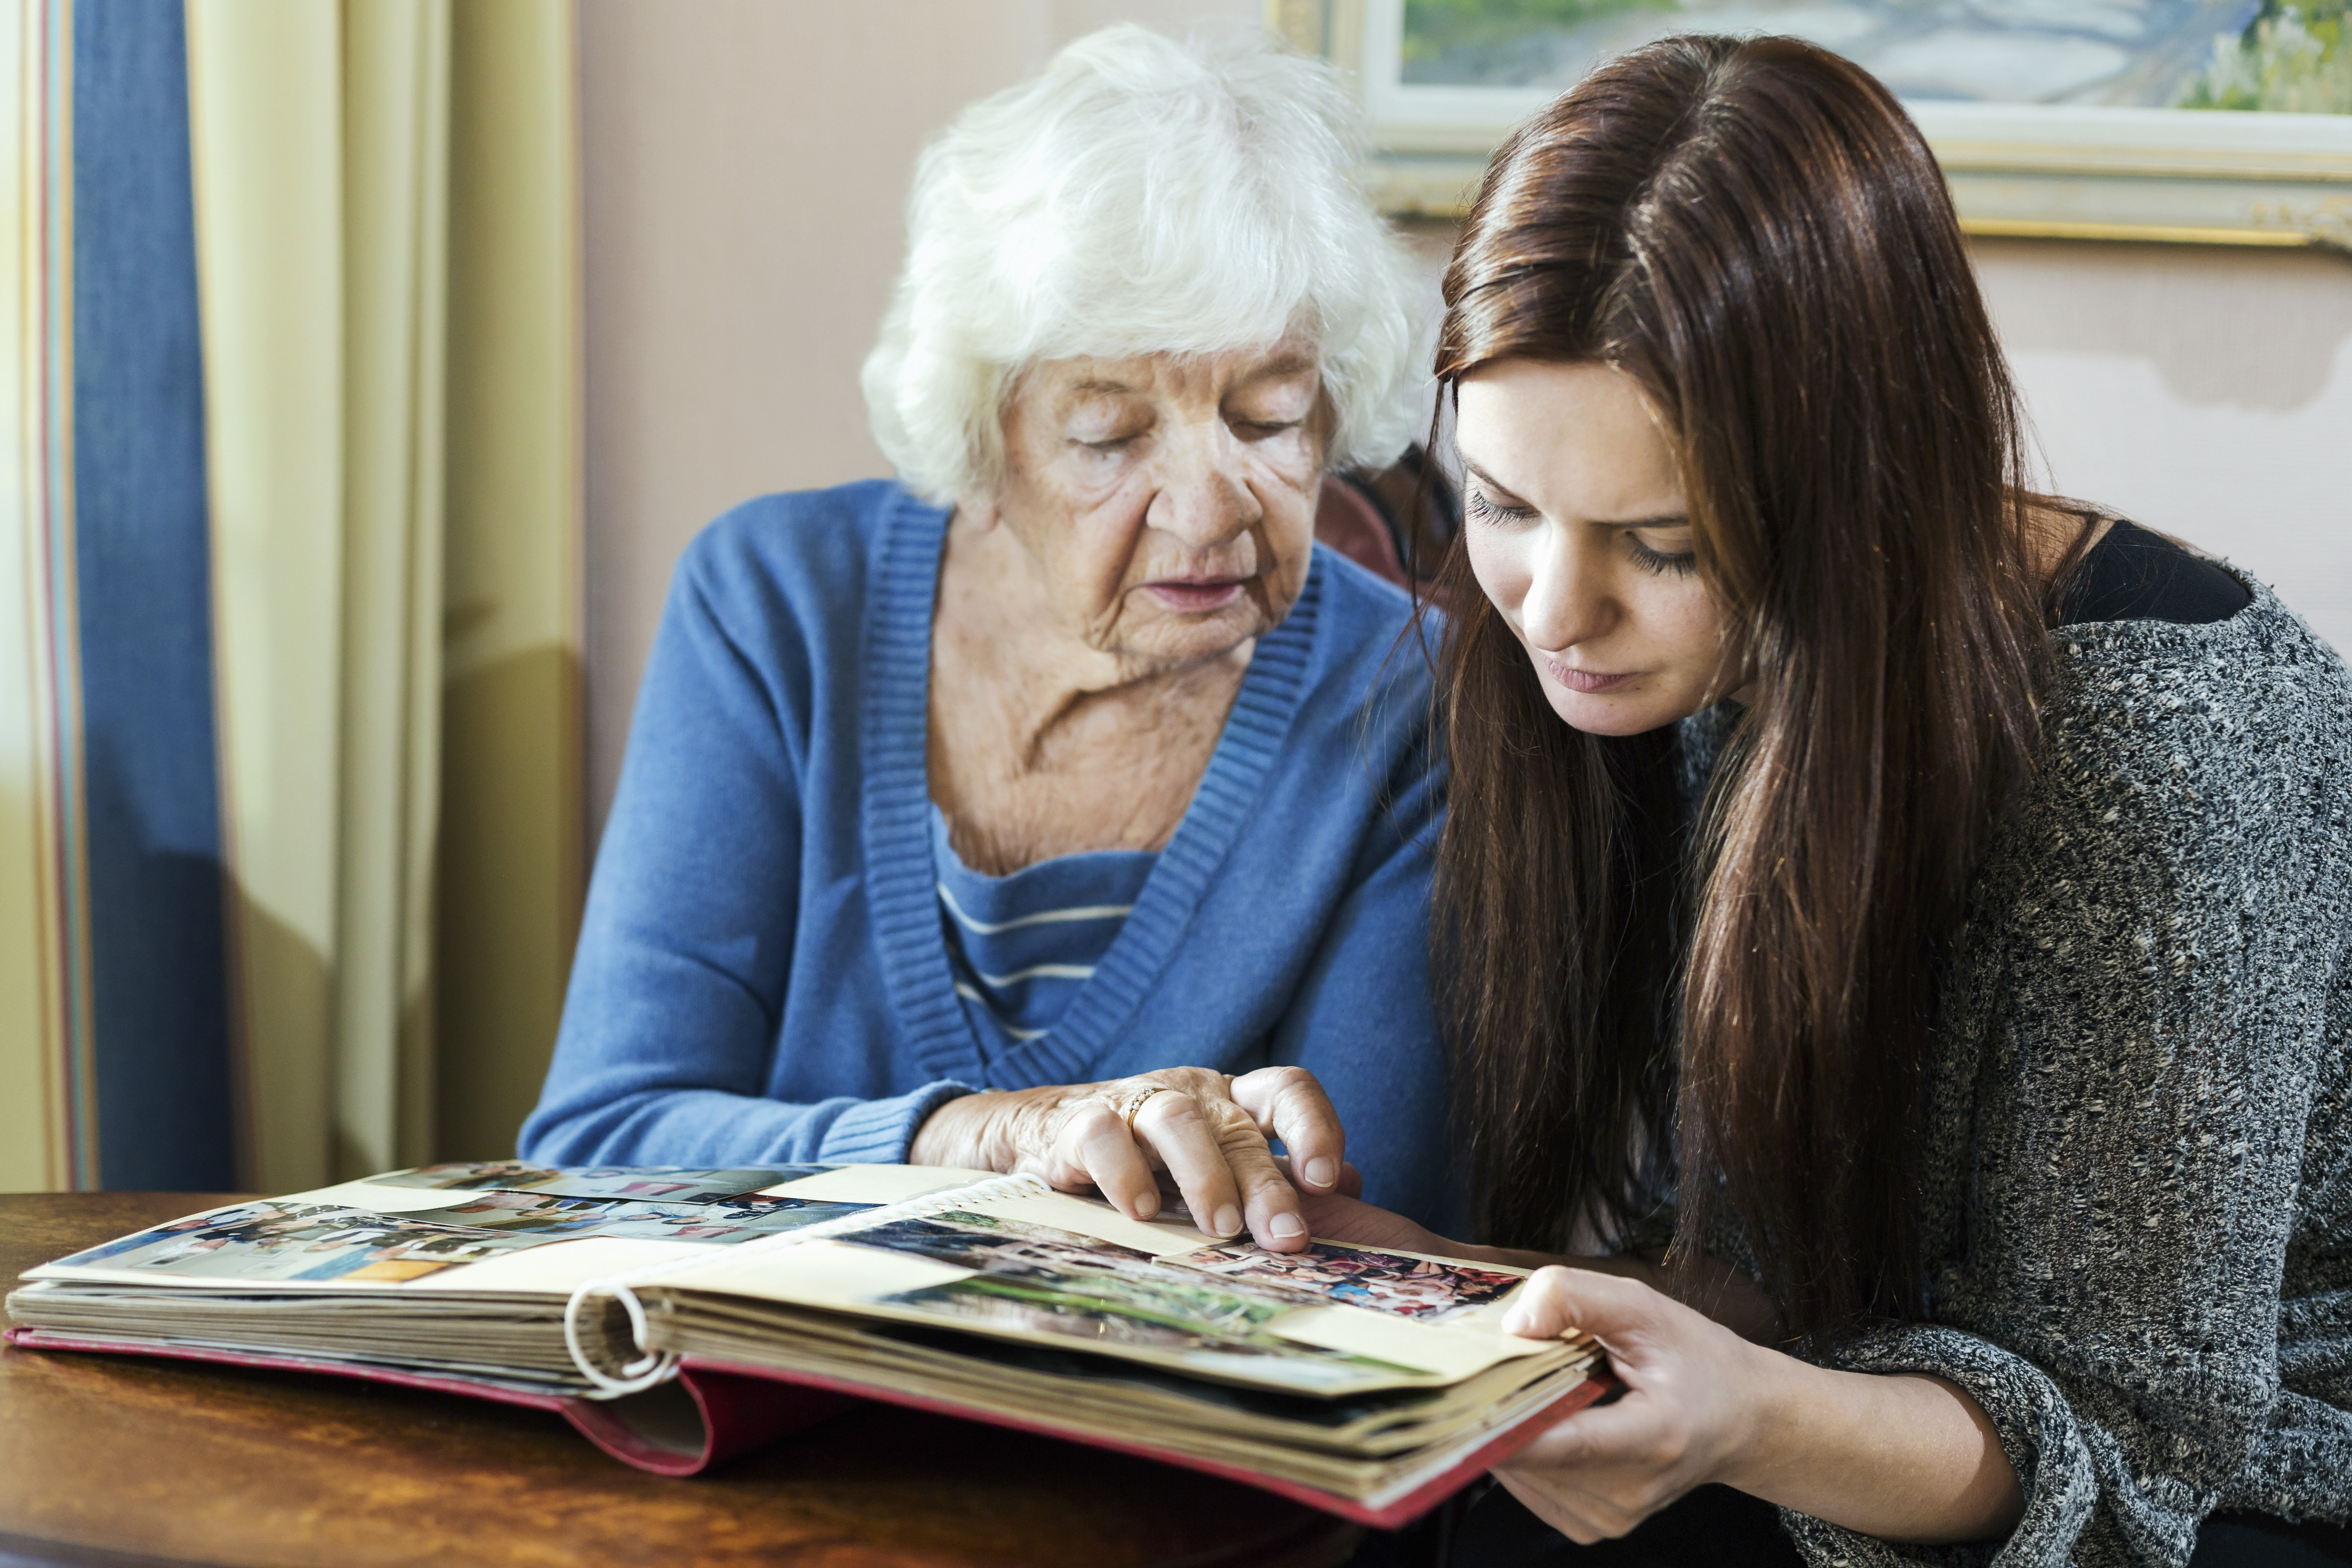 Grand-mère et petite-fille regardant un album photo dans une maison | Source : Getty Images